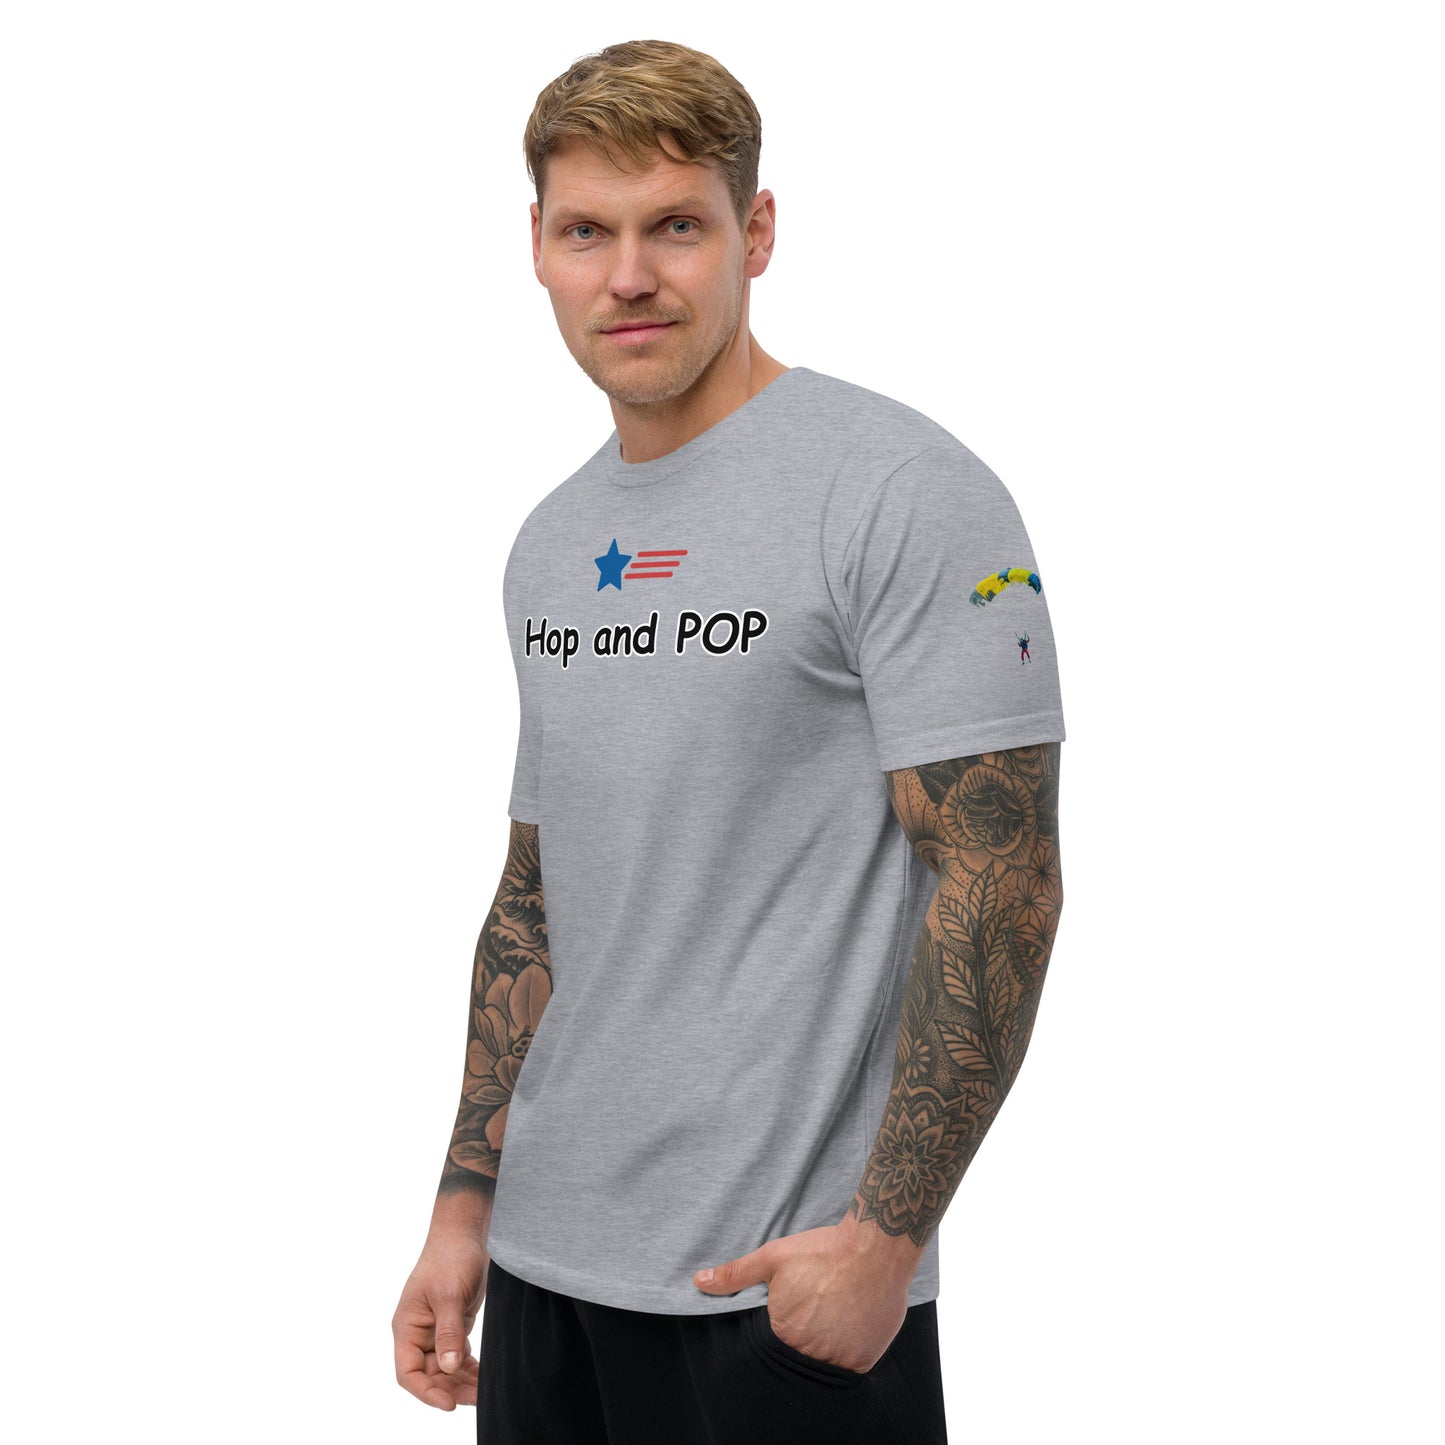 Hop and Pop Short Sleeve T-shirt